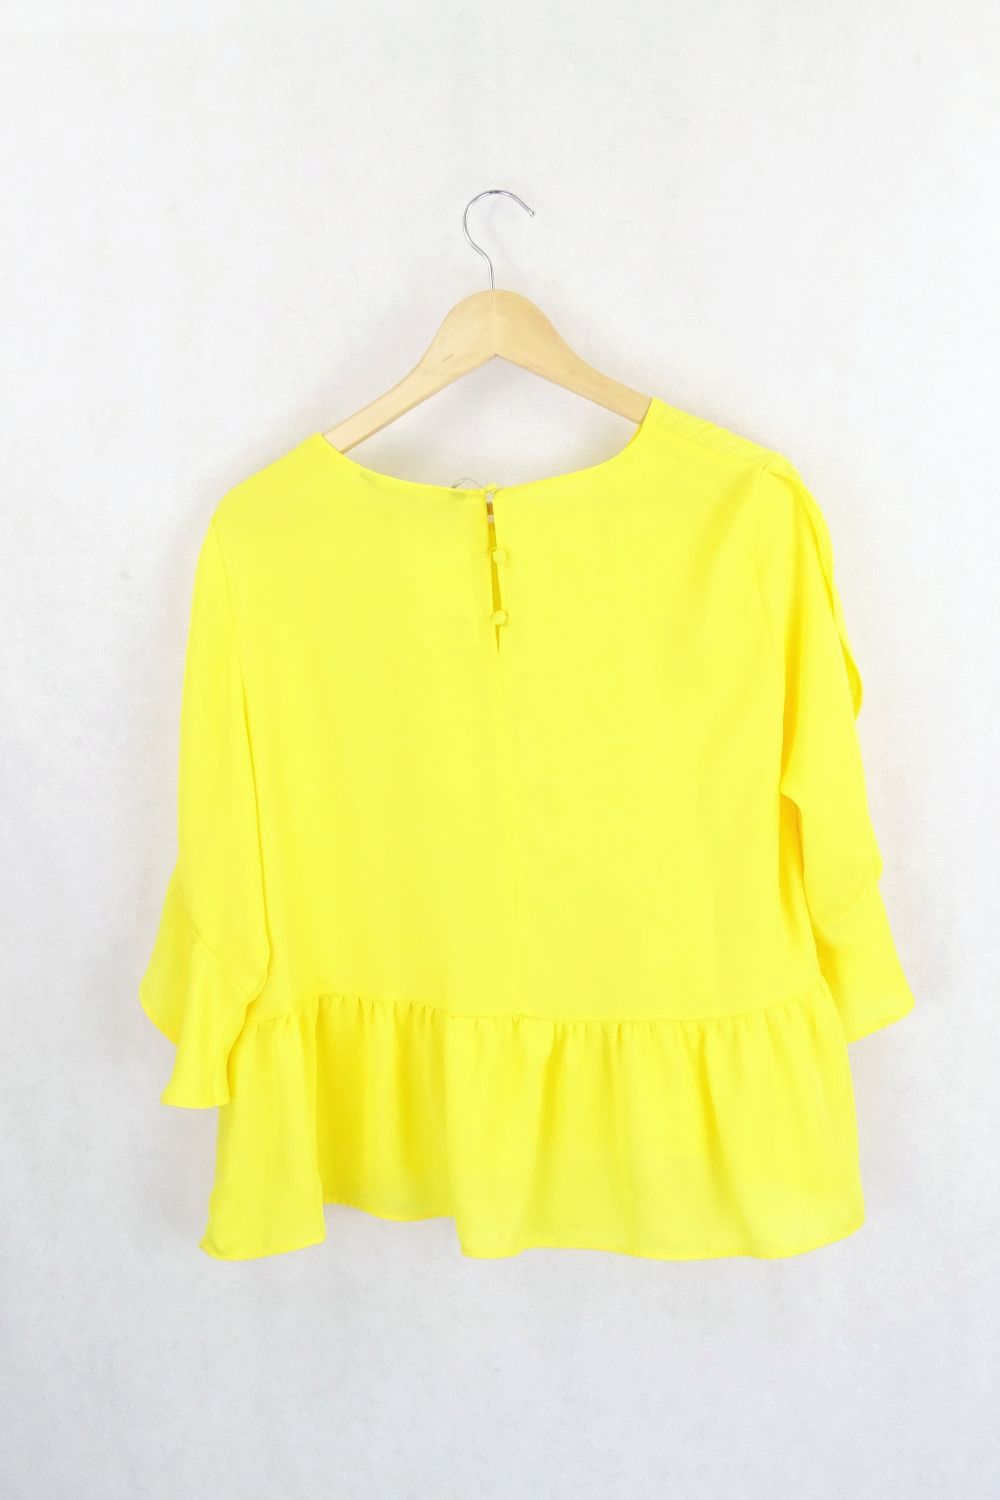 Zara Basic Yellow Blouse L